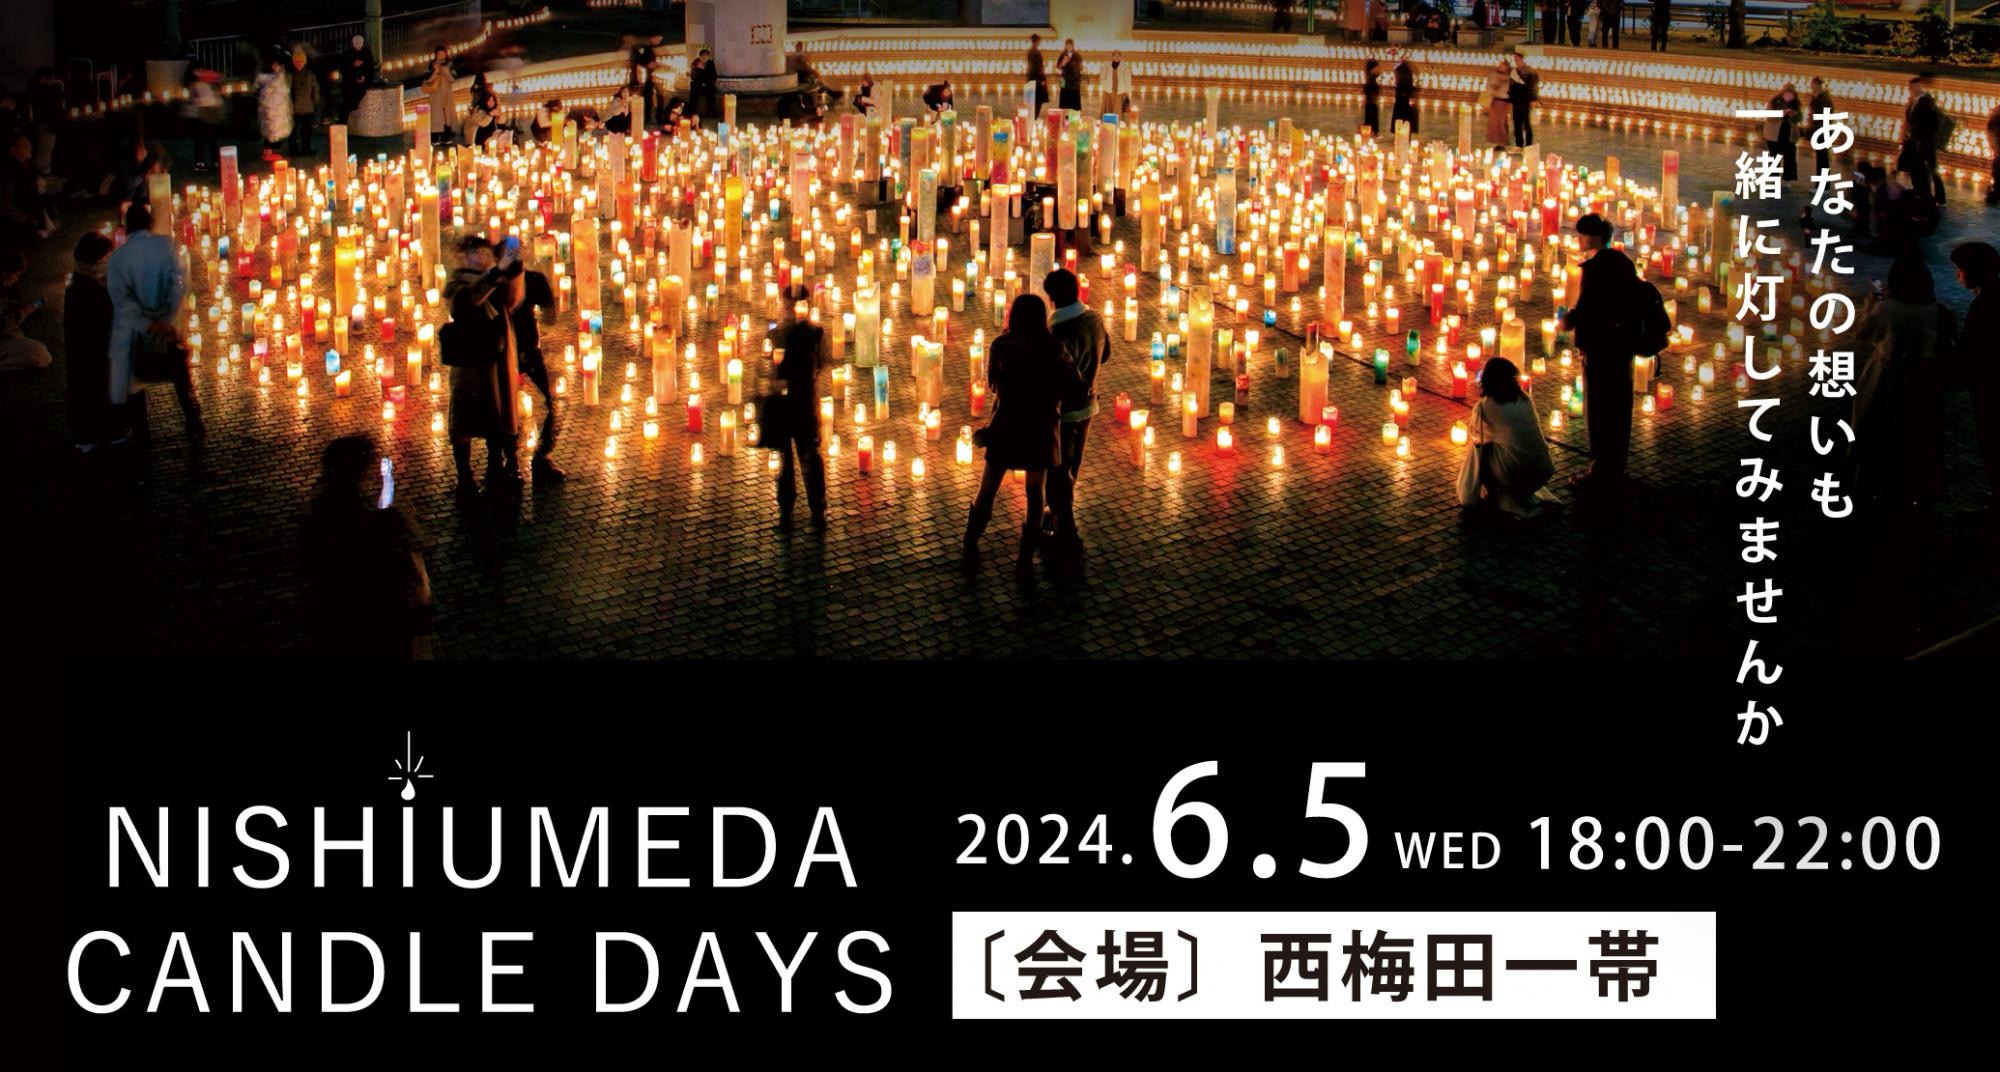 NISHIUMEDA CANDLE DAYS 2024 開催のお知らせ